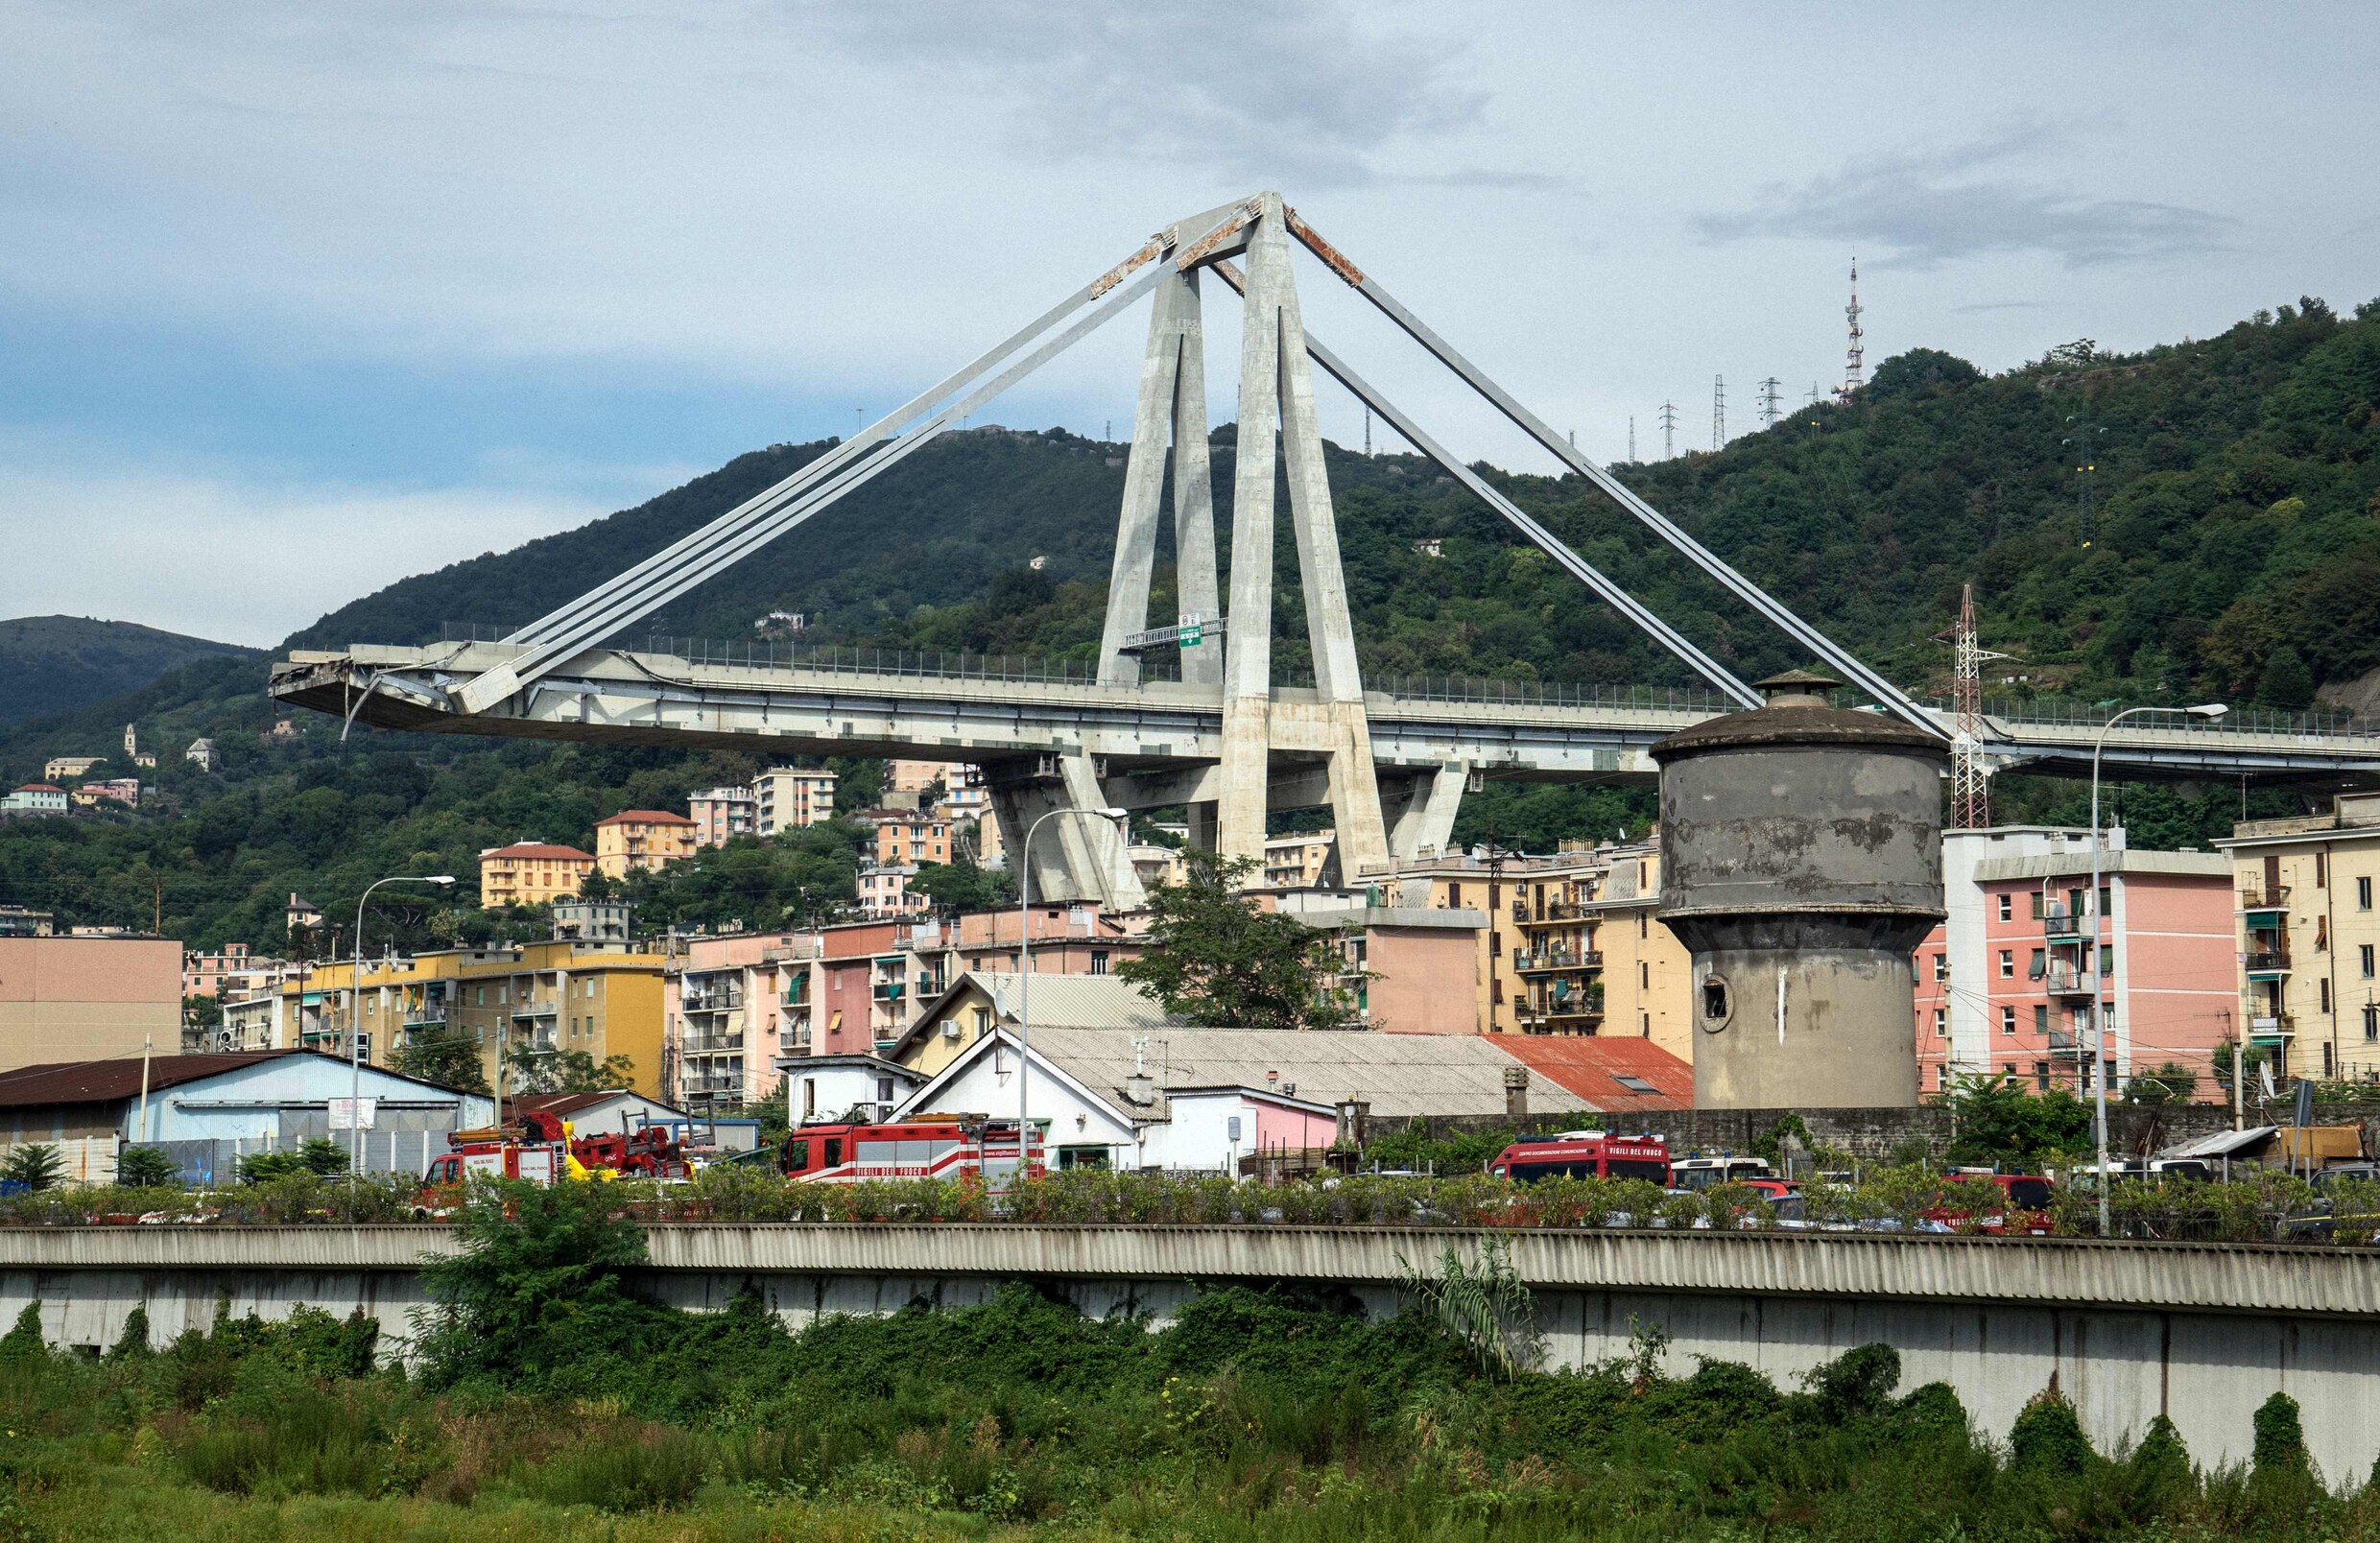 In beeld: De ravage na het instorten van de brug in Genua